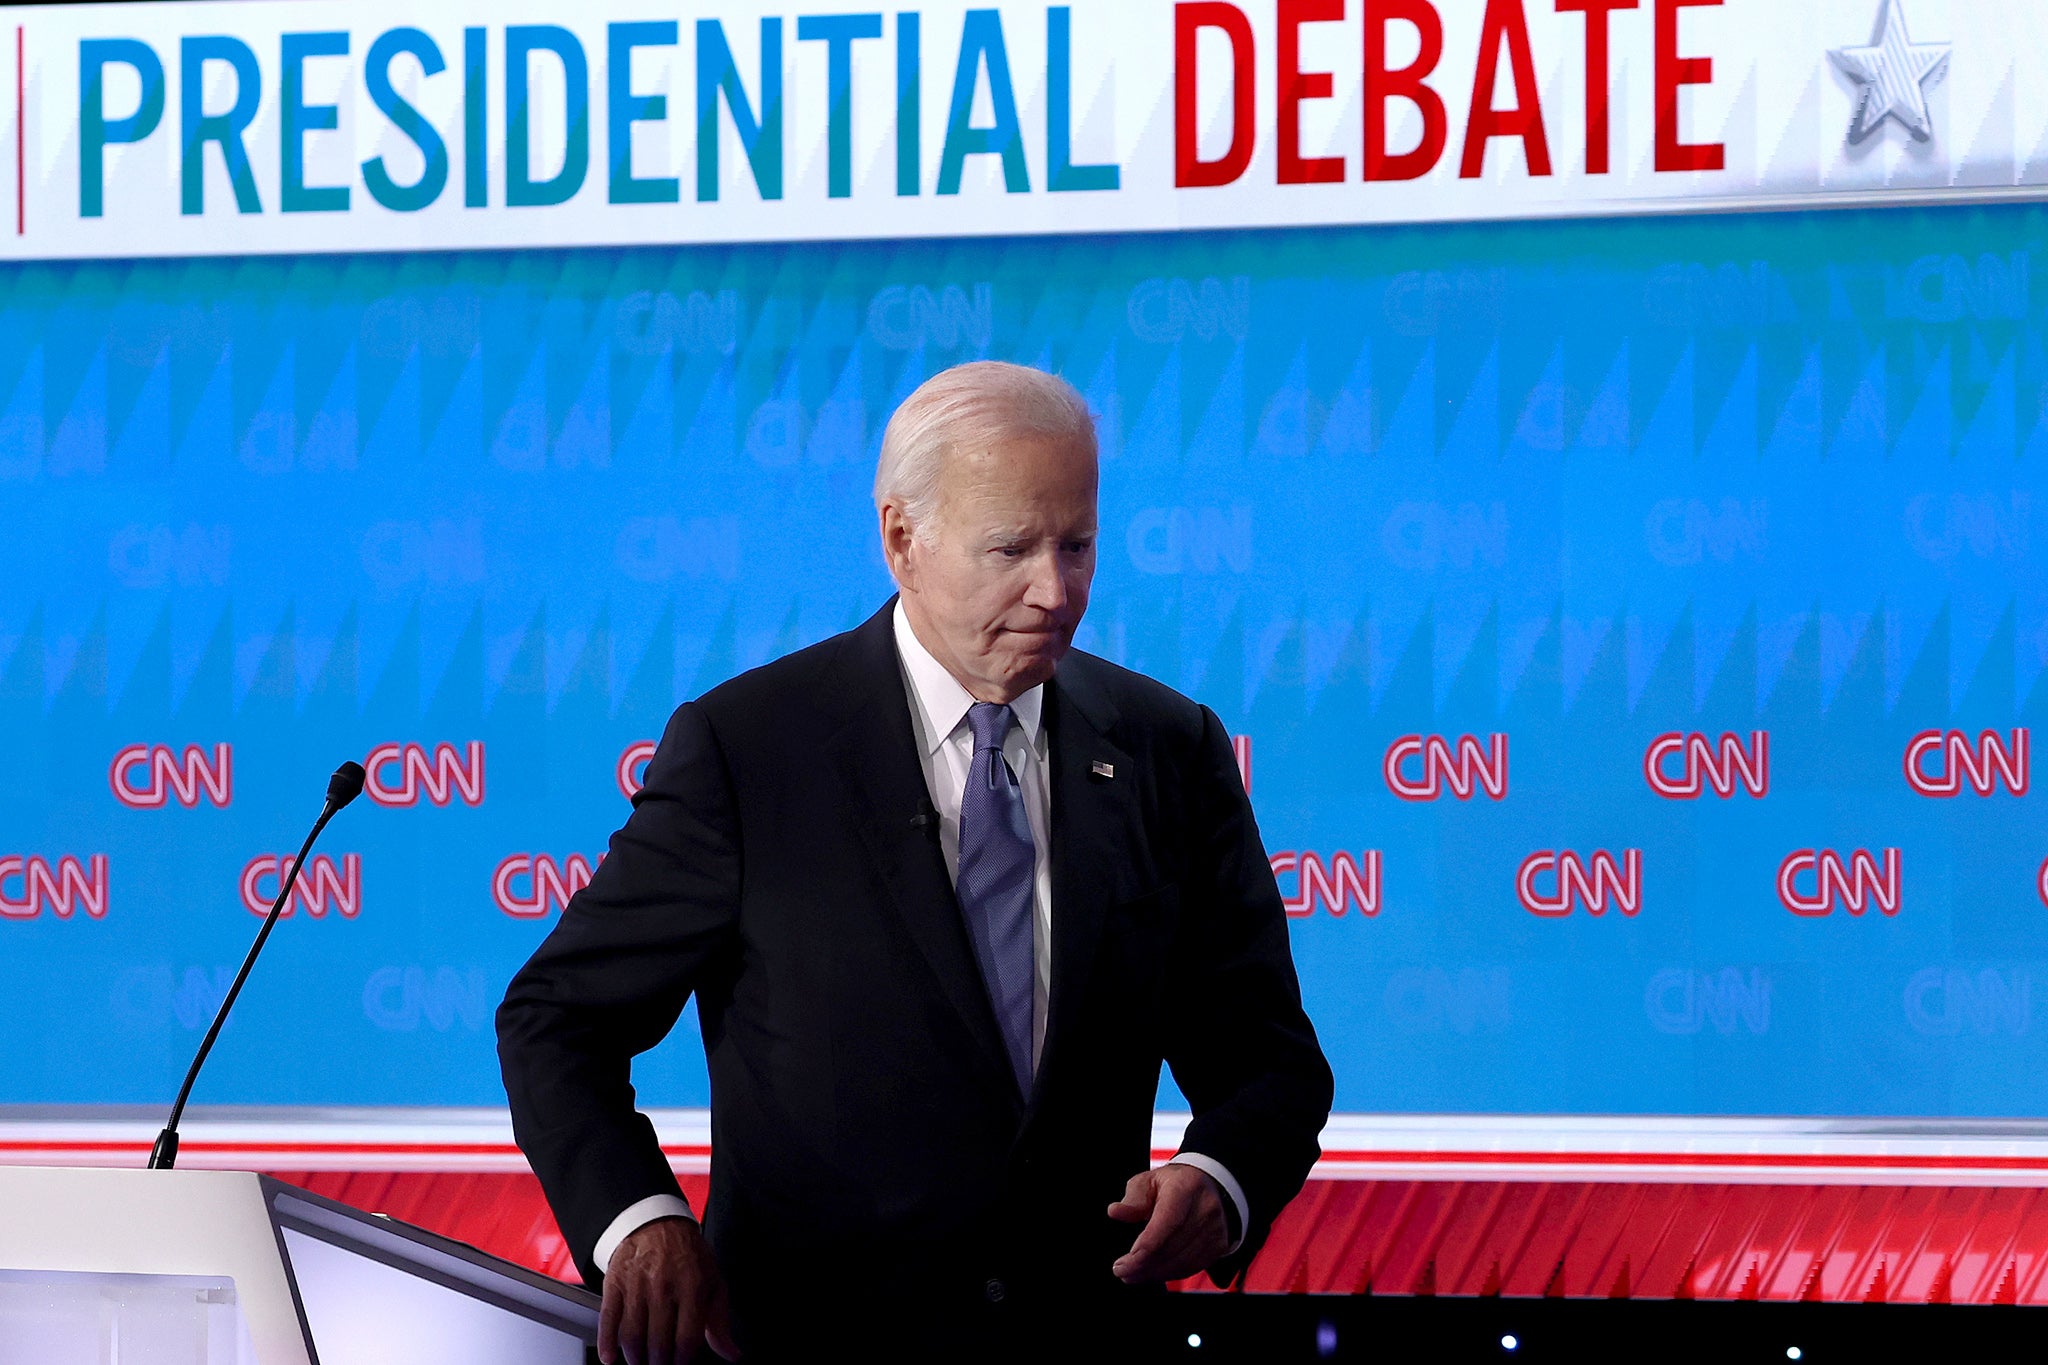 Joe Biden leaves the CNN debate stage in Atlanta